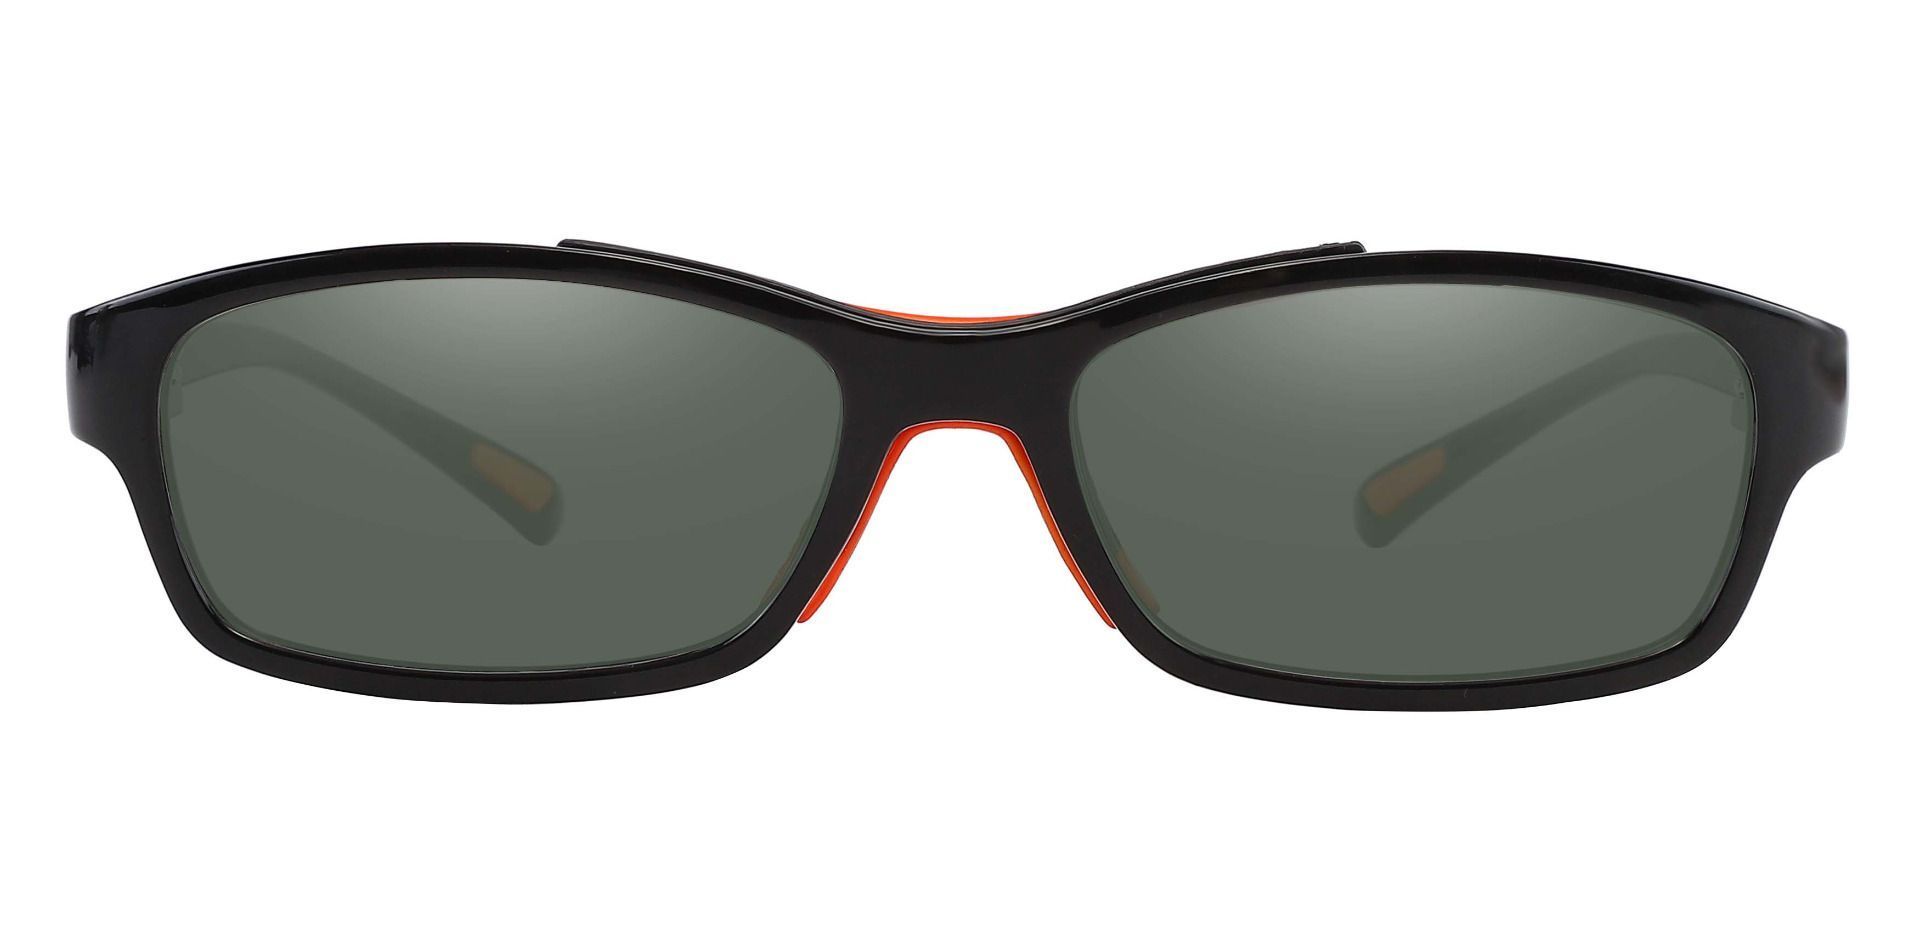 Glynn Rectangle Prescription Sunglasses - Black Frame With Green Lenses